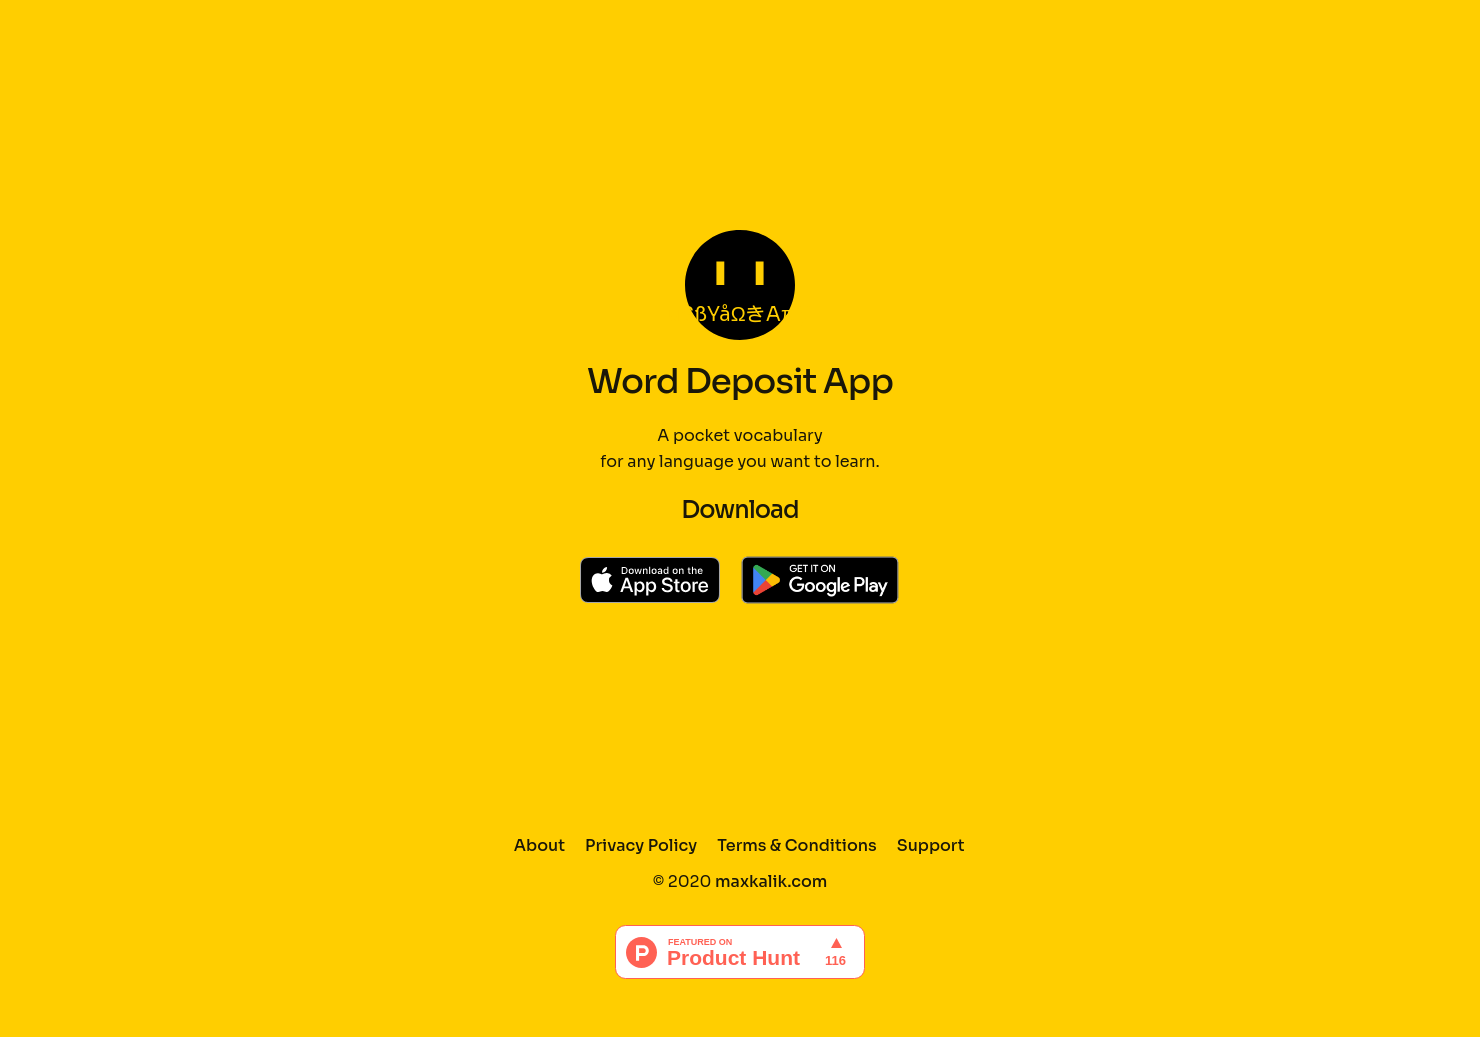 WordDeposit App